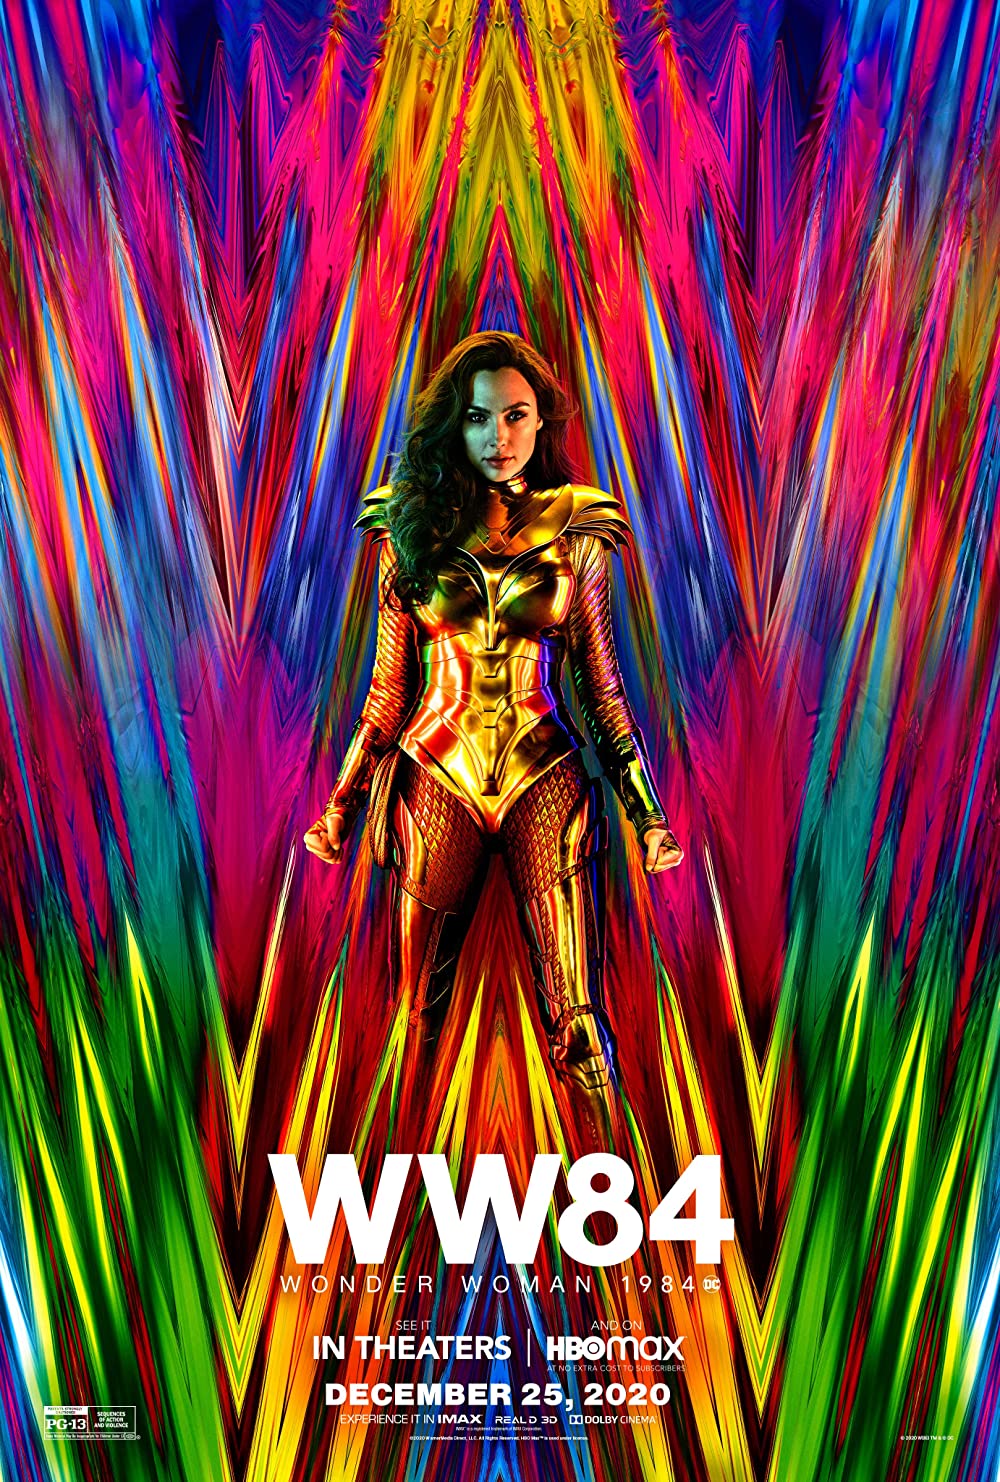 Filmbeschreibung zu Wonder Woman 1984 3D